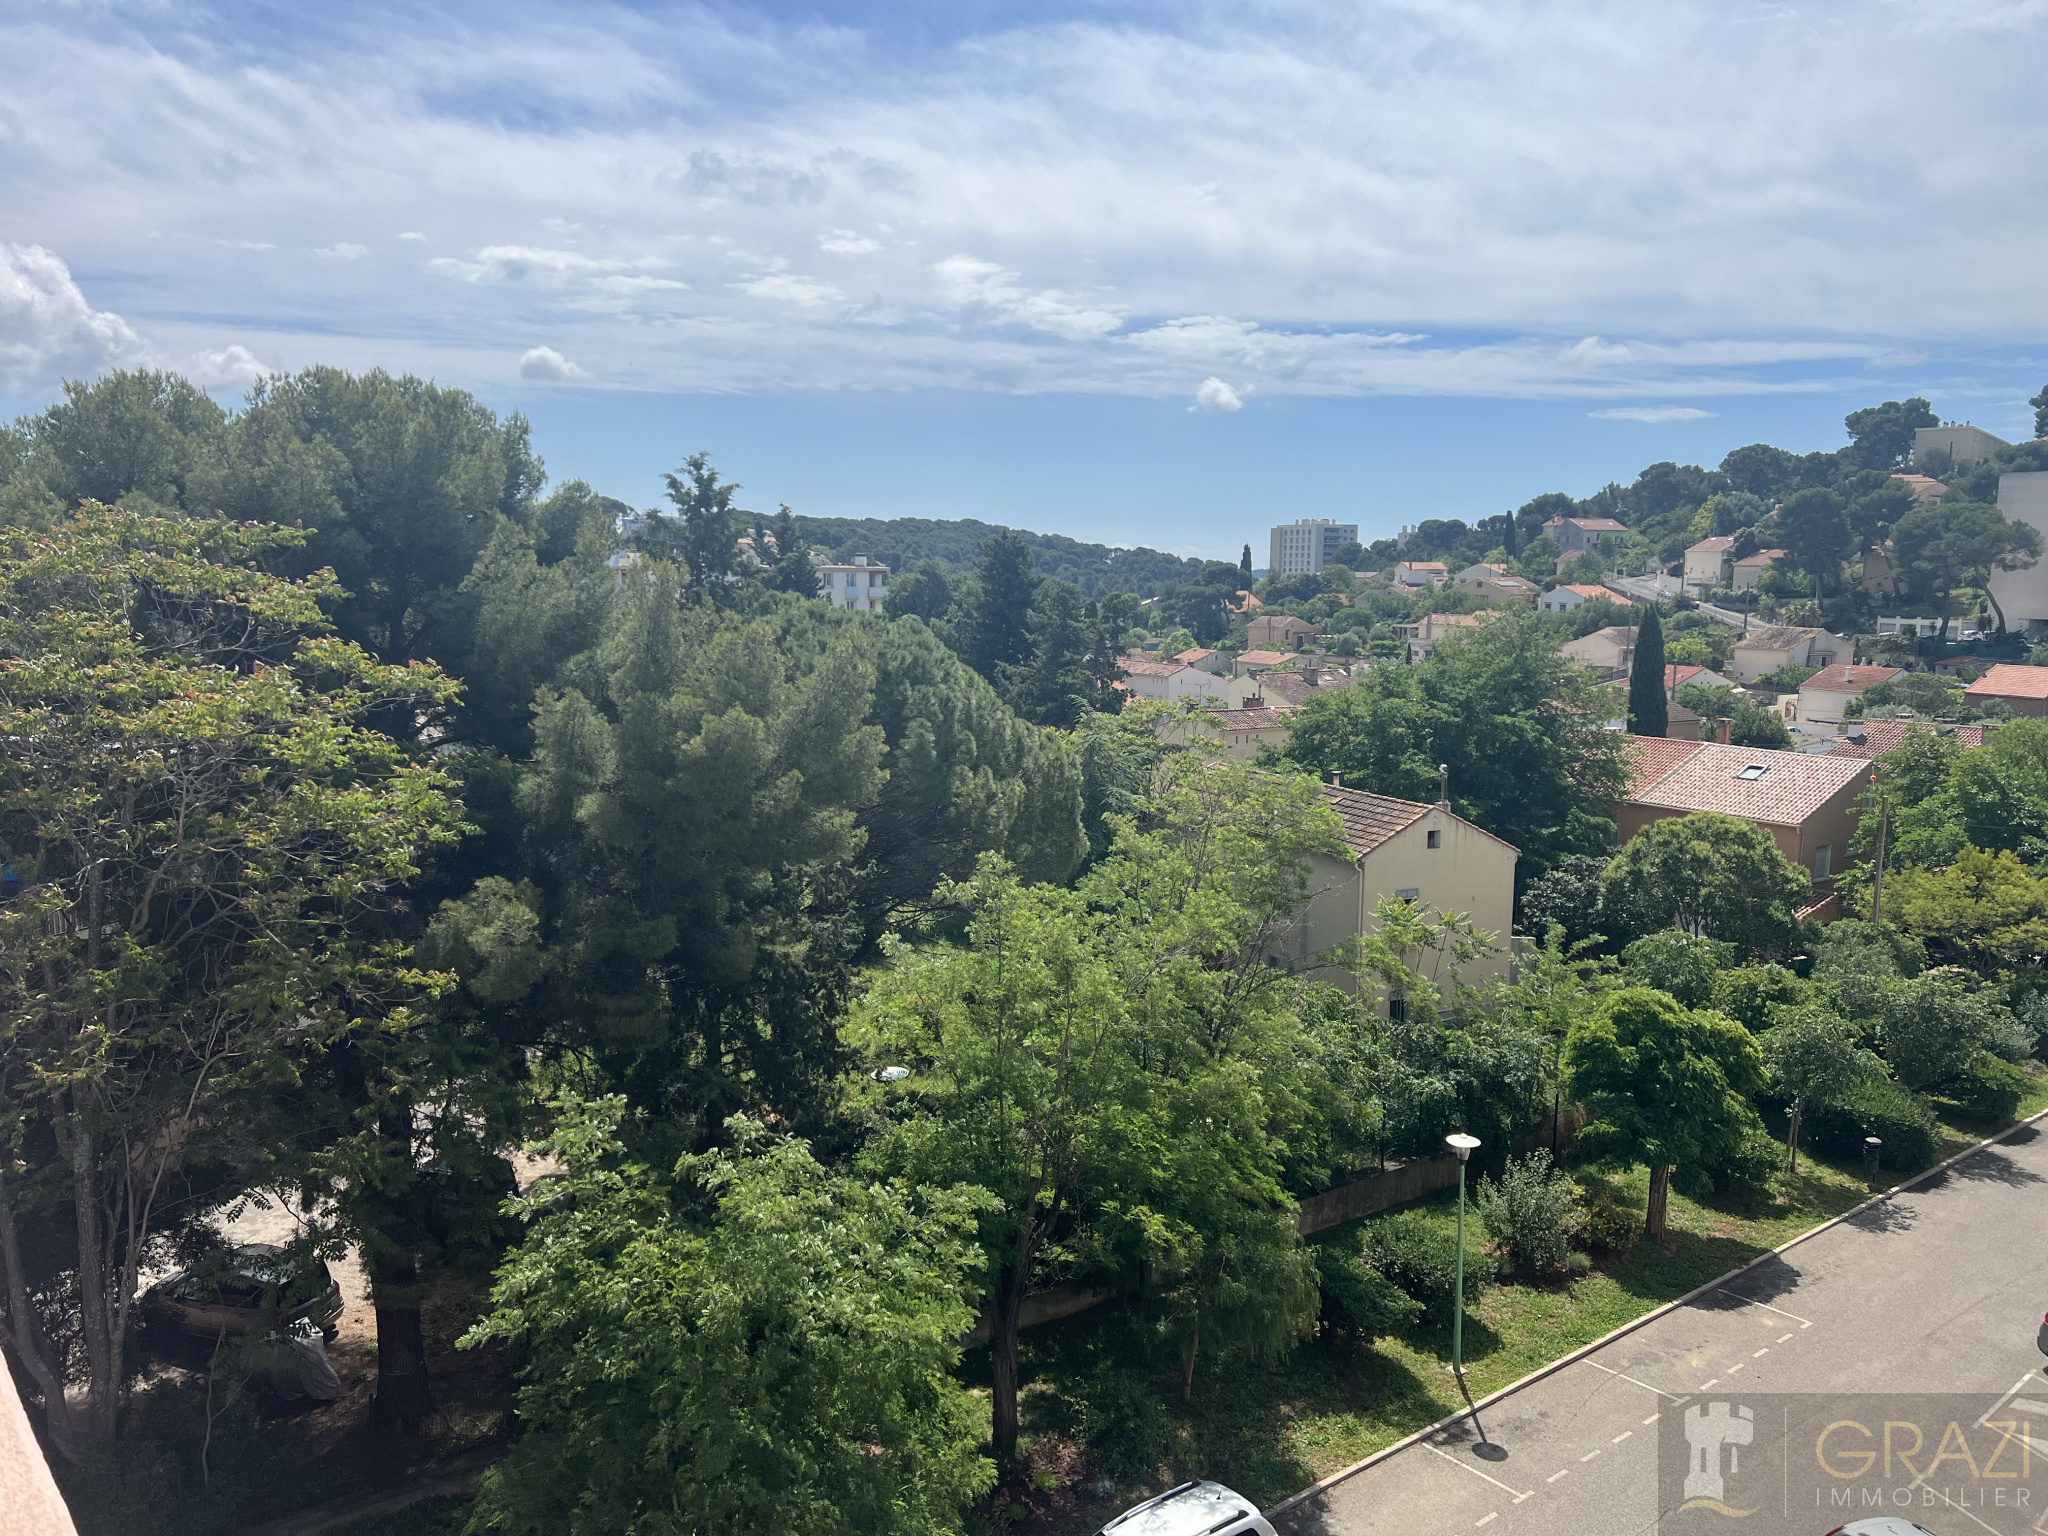 Agence immobilière de Grazi Immobilier Toulon